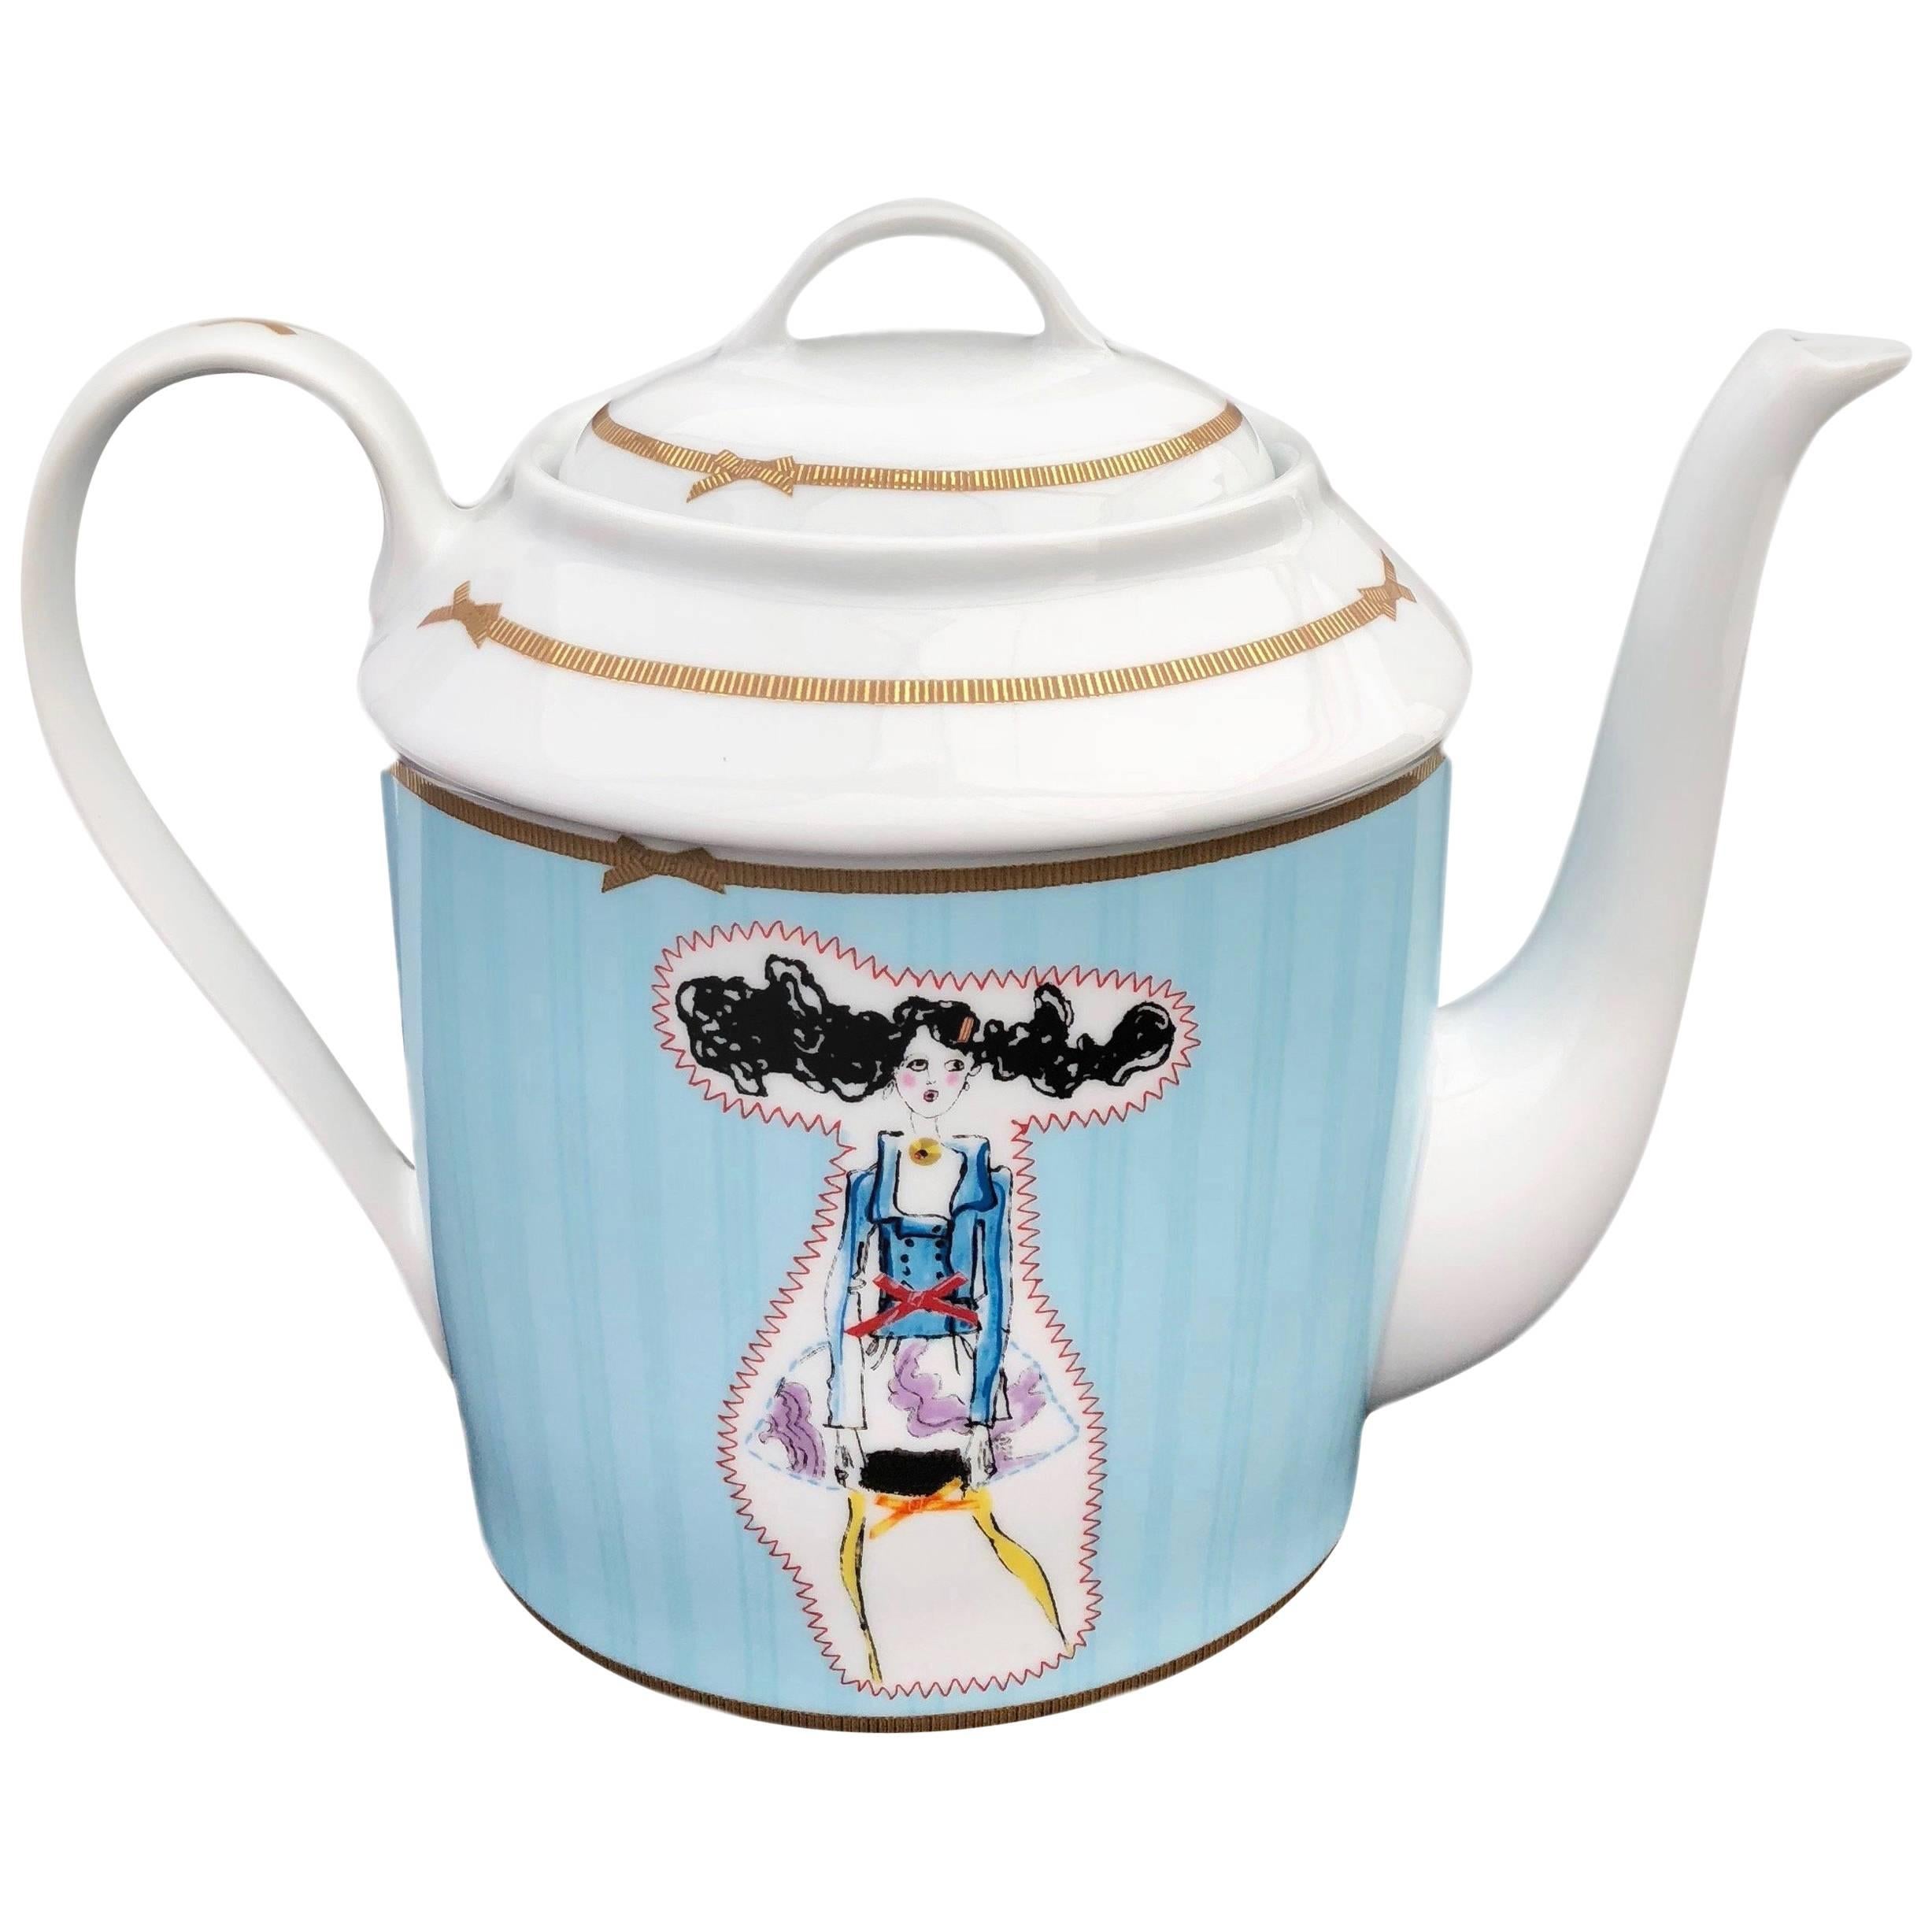 Christofle Porcelain Tea-Coffee Pot, Christian Lacroix "Poupées" 1990s For Sale